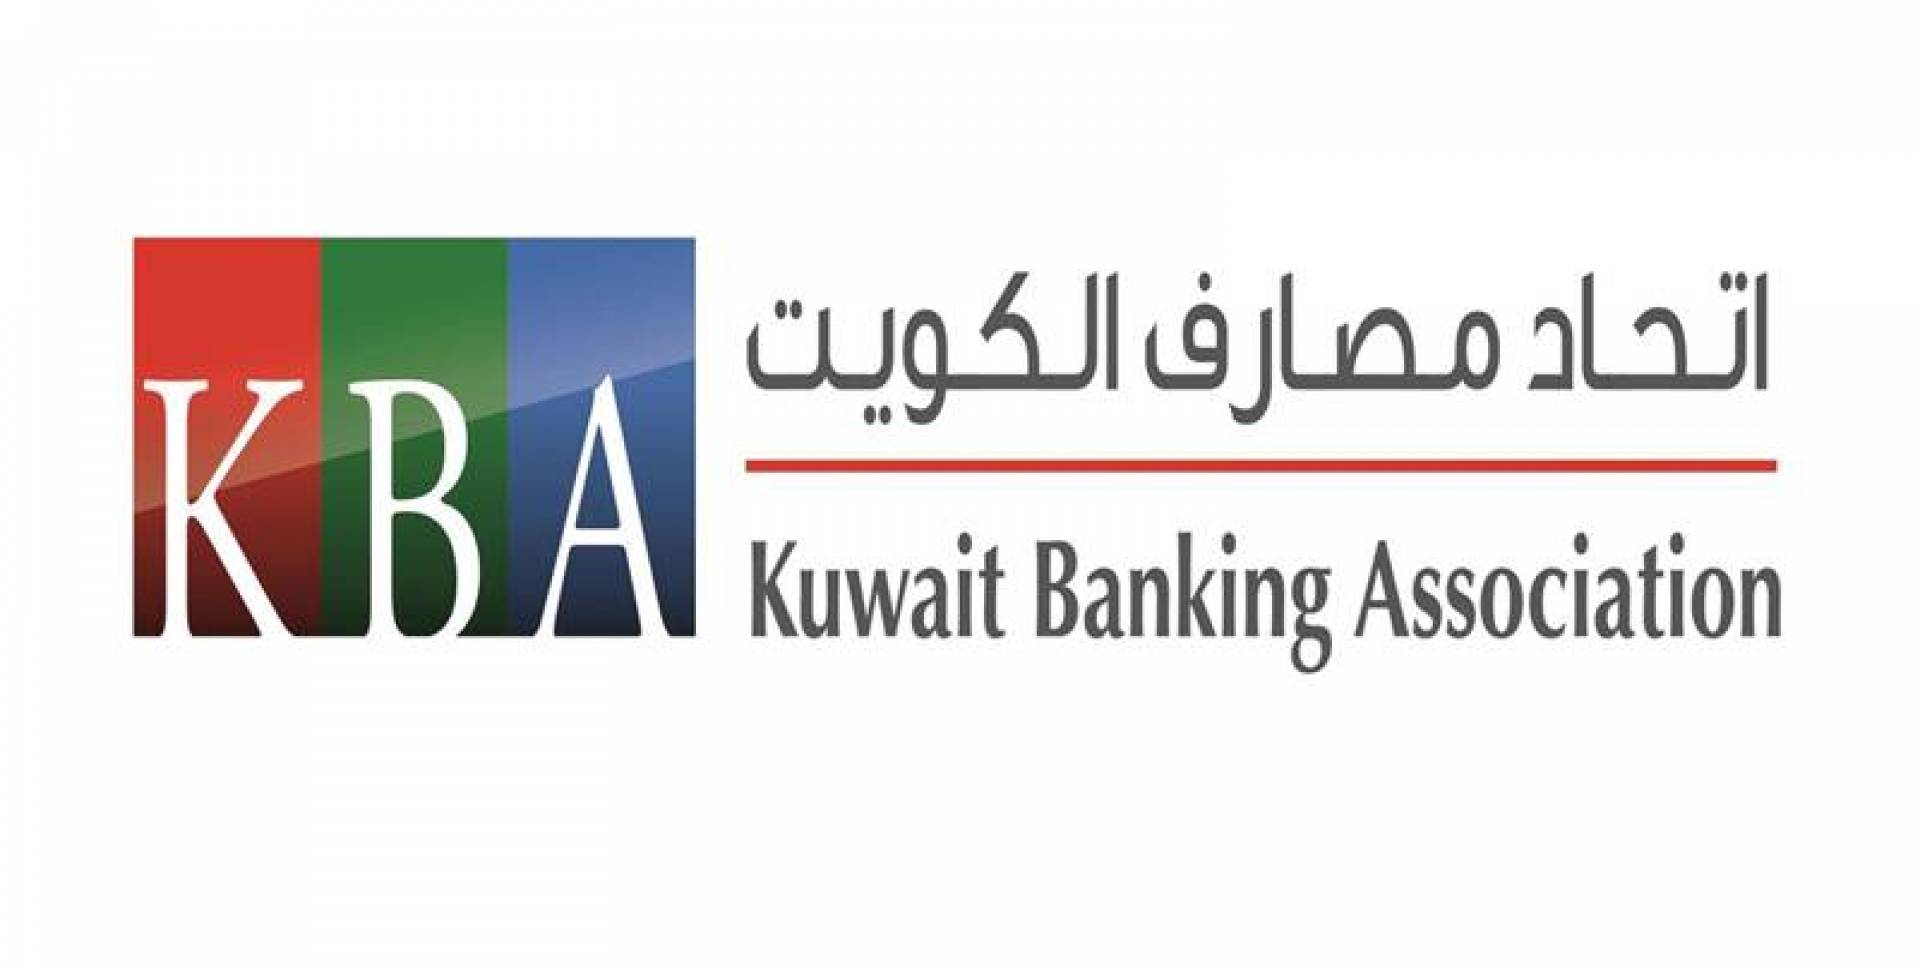 اتحاد مصارف الكويت: استئناف اعمال البنوك غدا في الافرع المعلن عنها سابقا